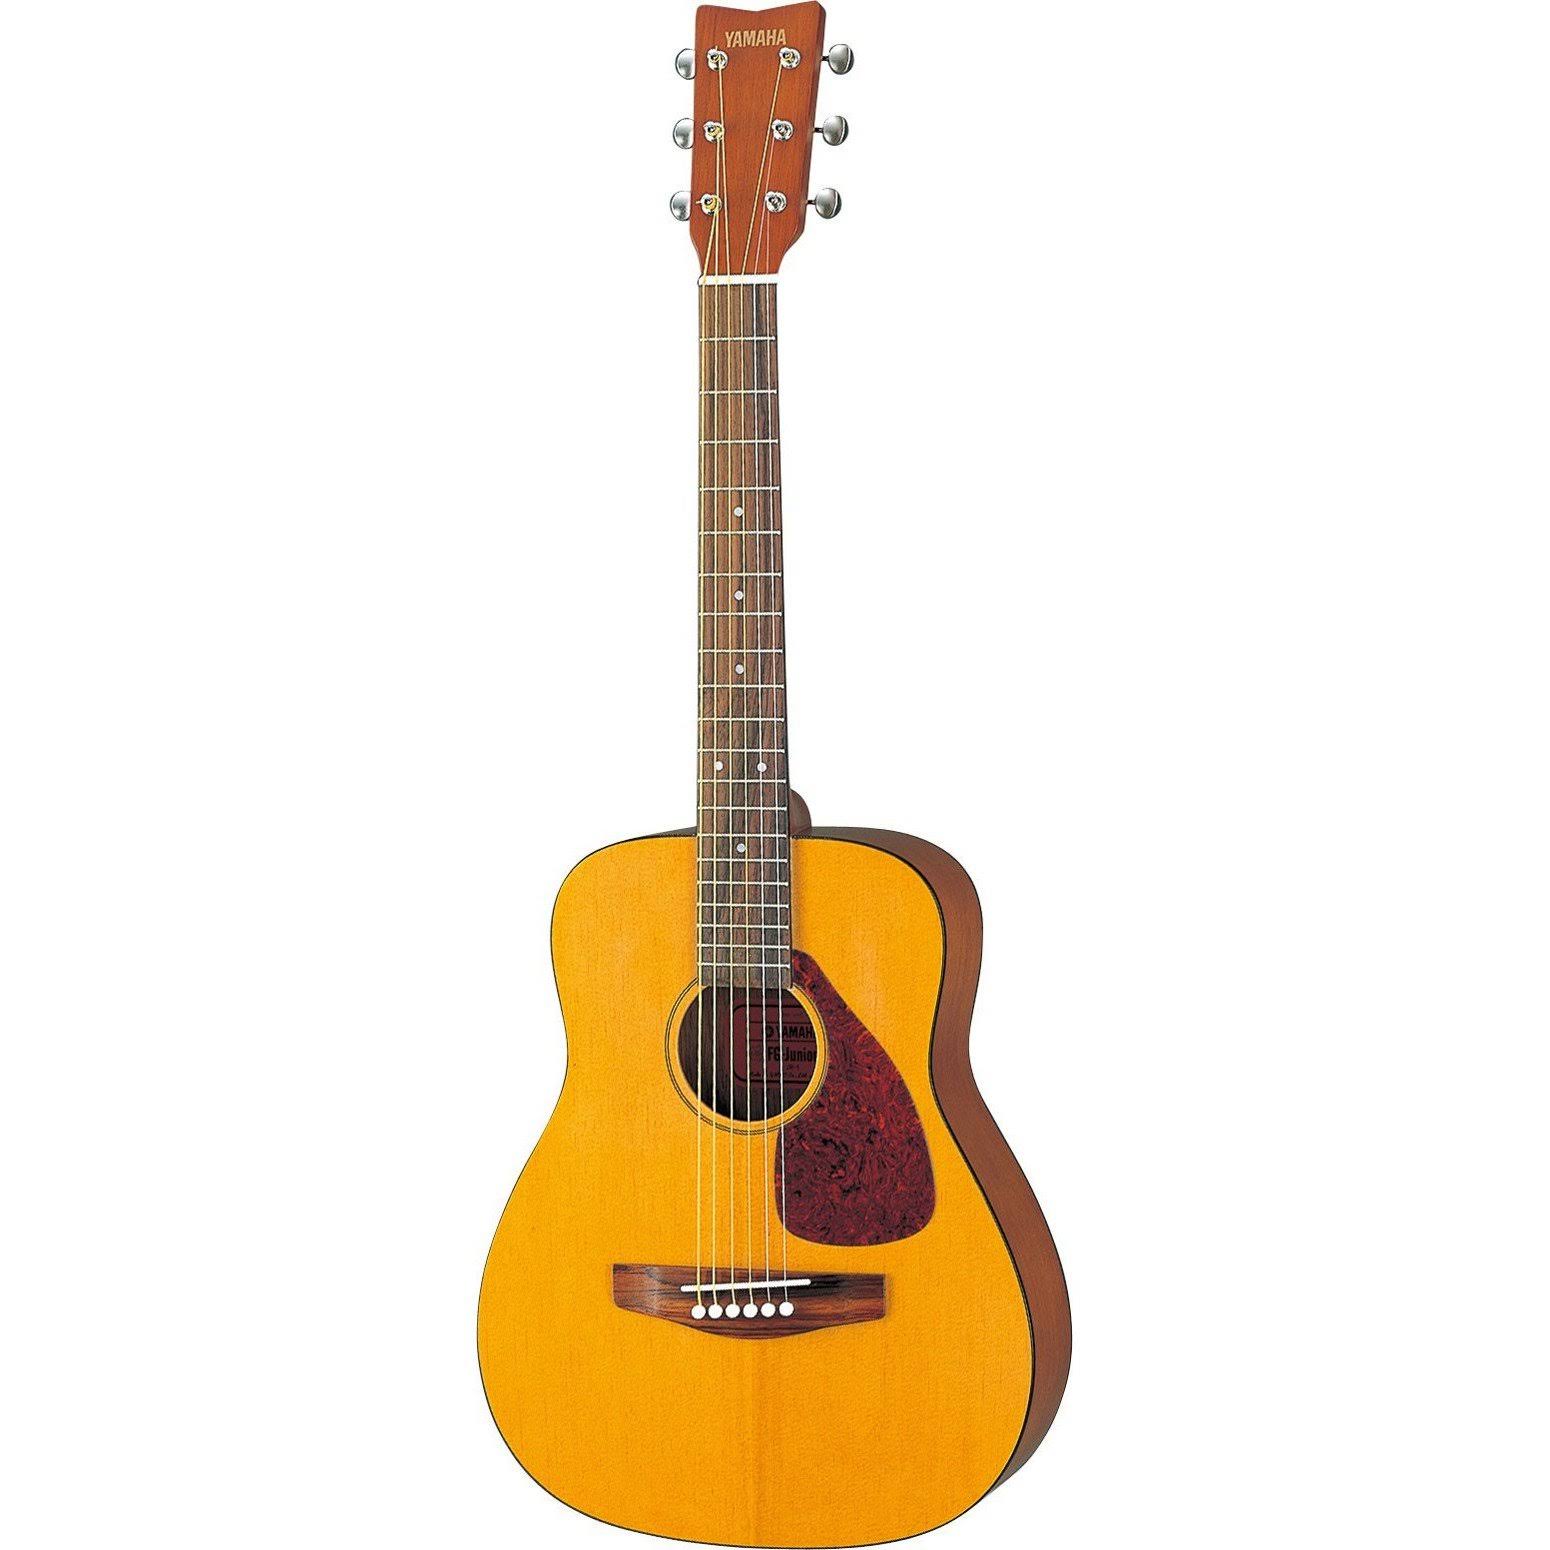 Yamaha JR1 Guitar with Gig Bag - 3:4 Scale